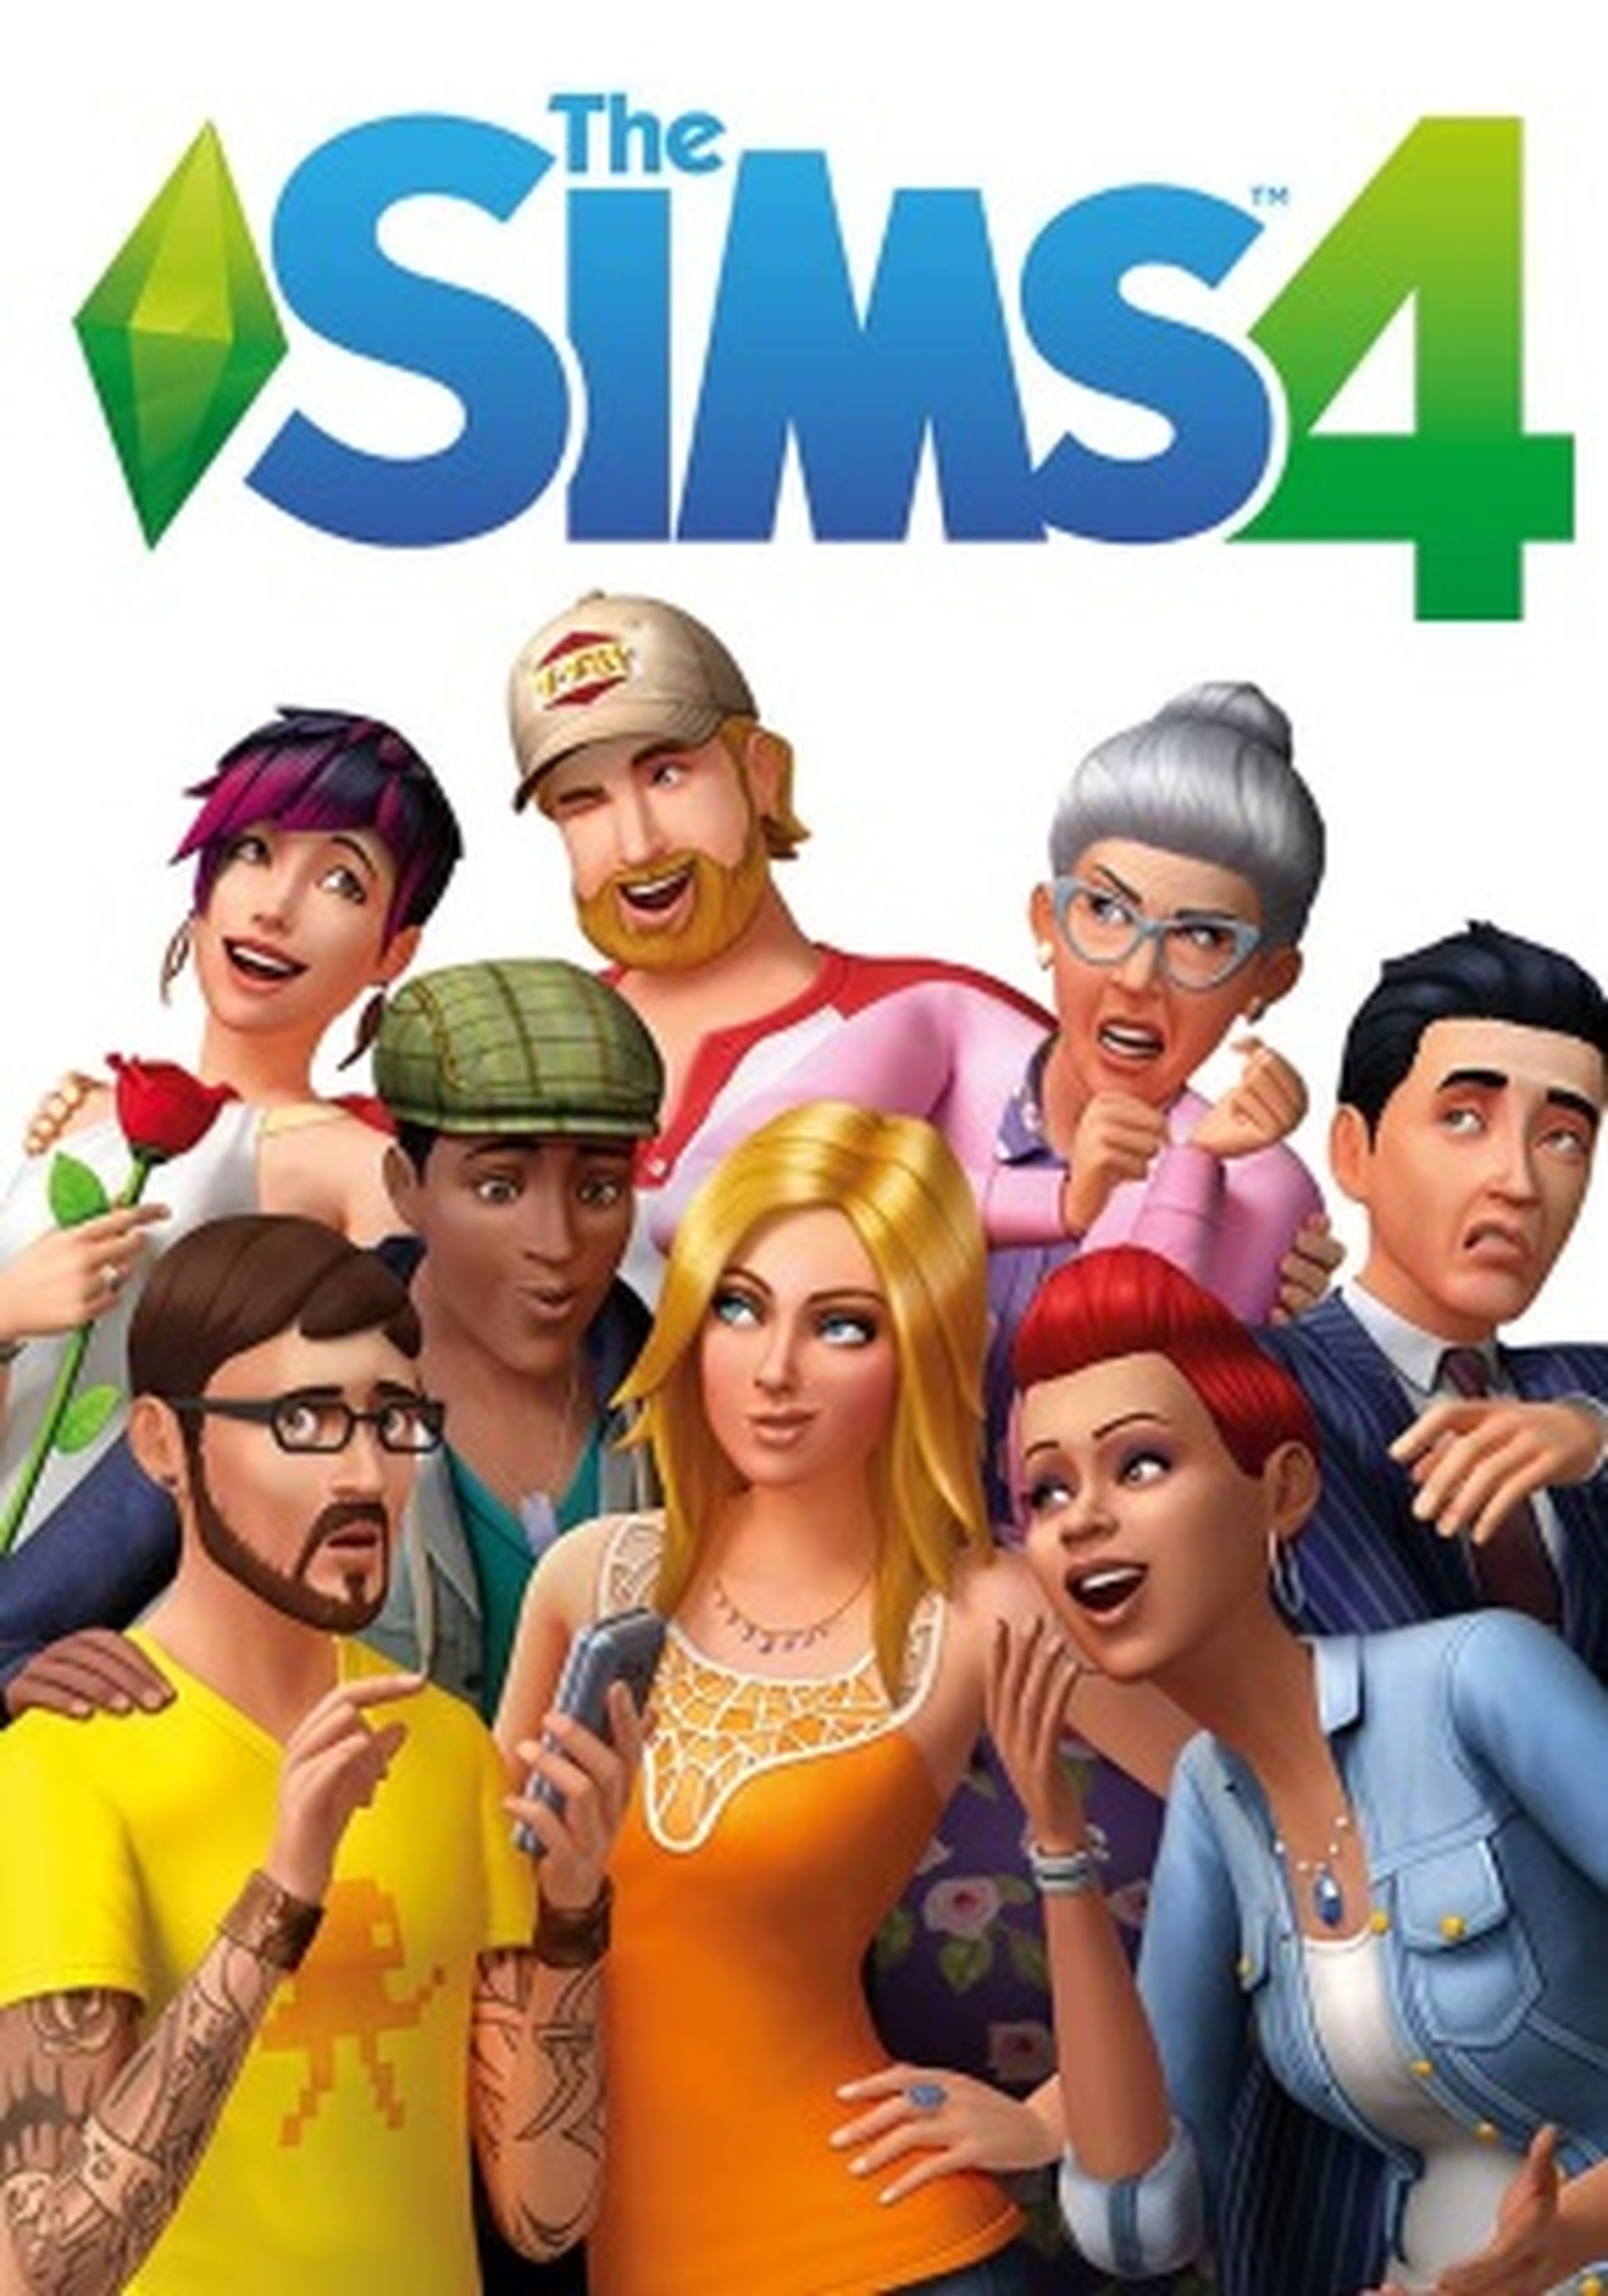 Los Sims 4 carátula